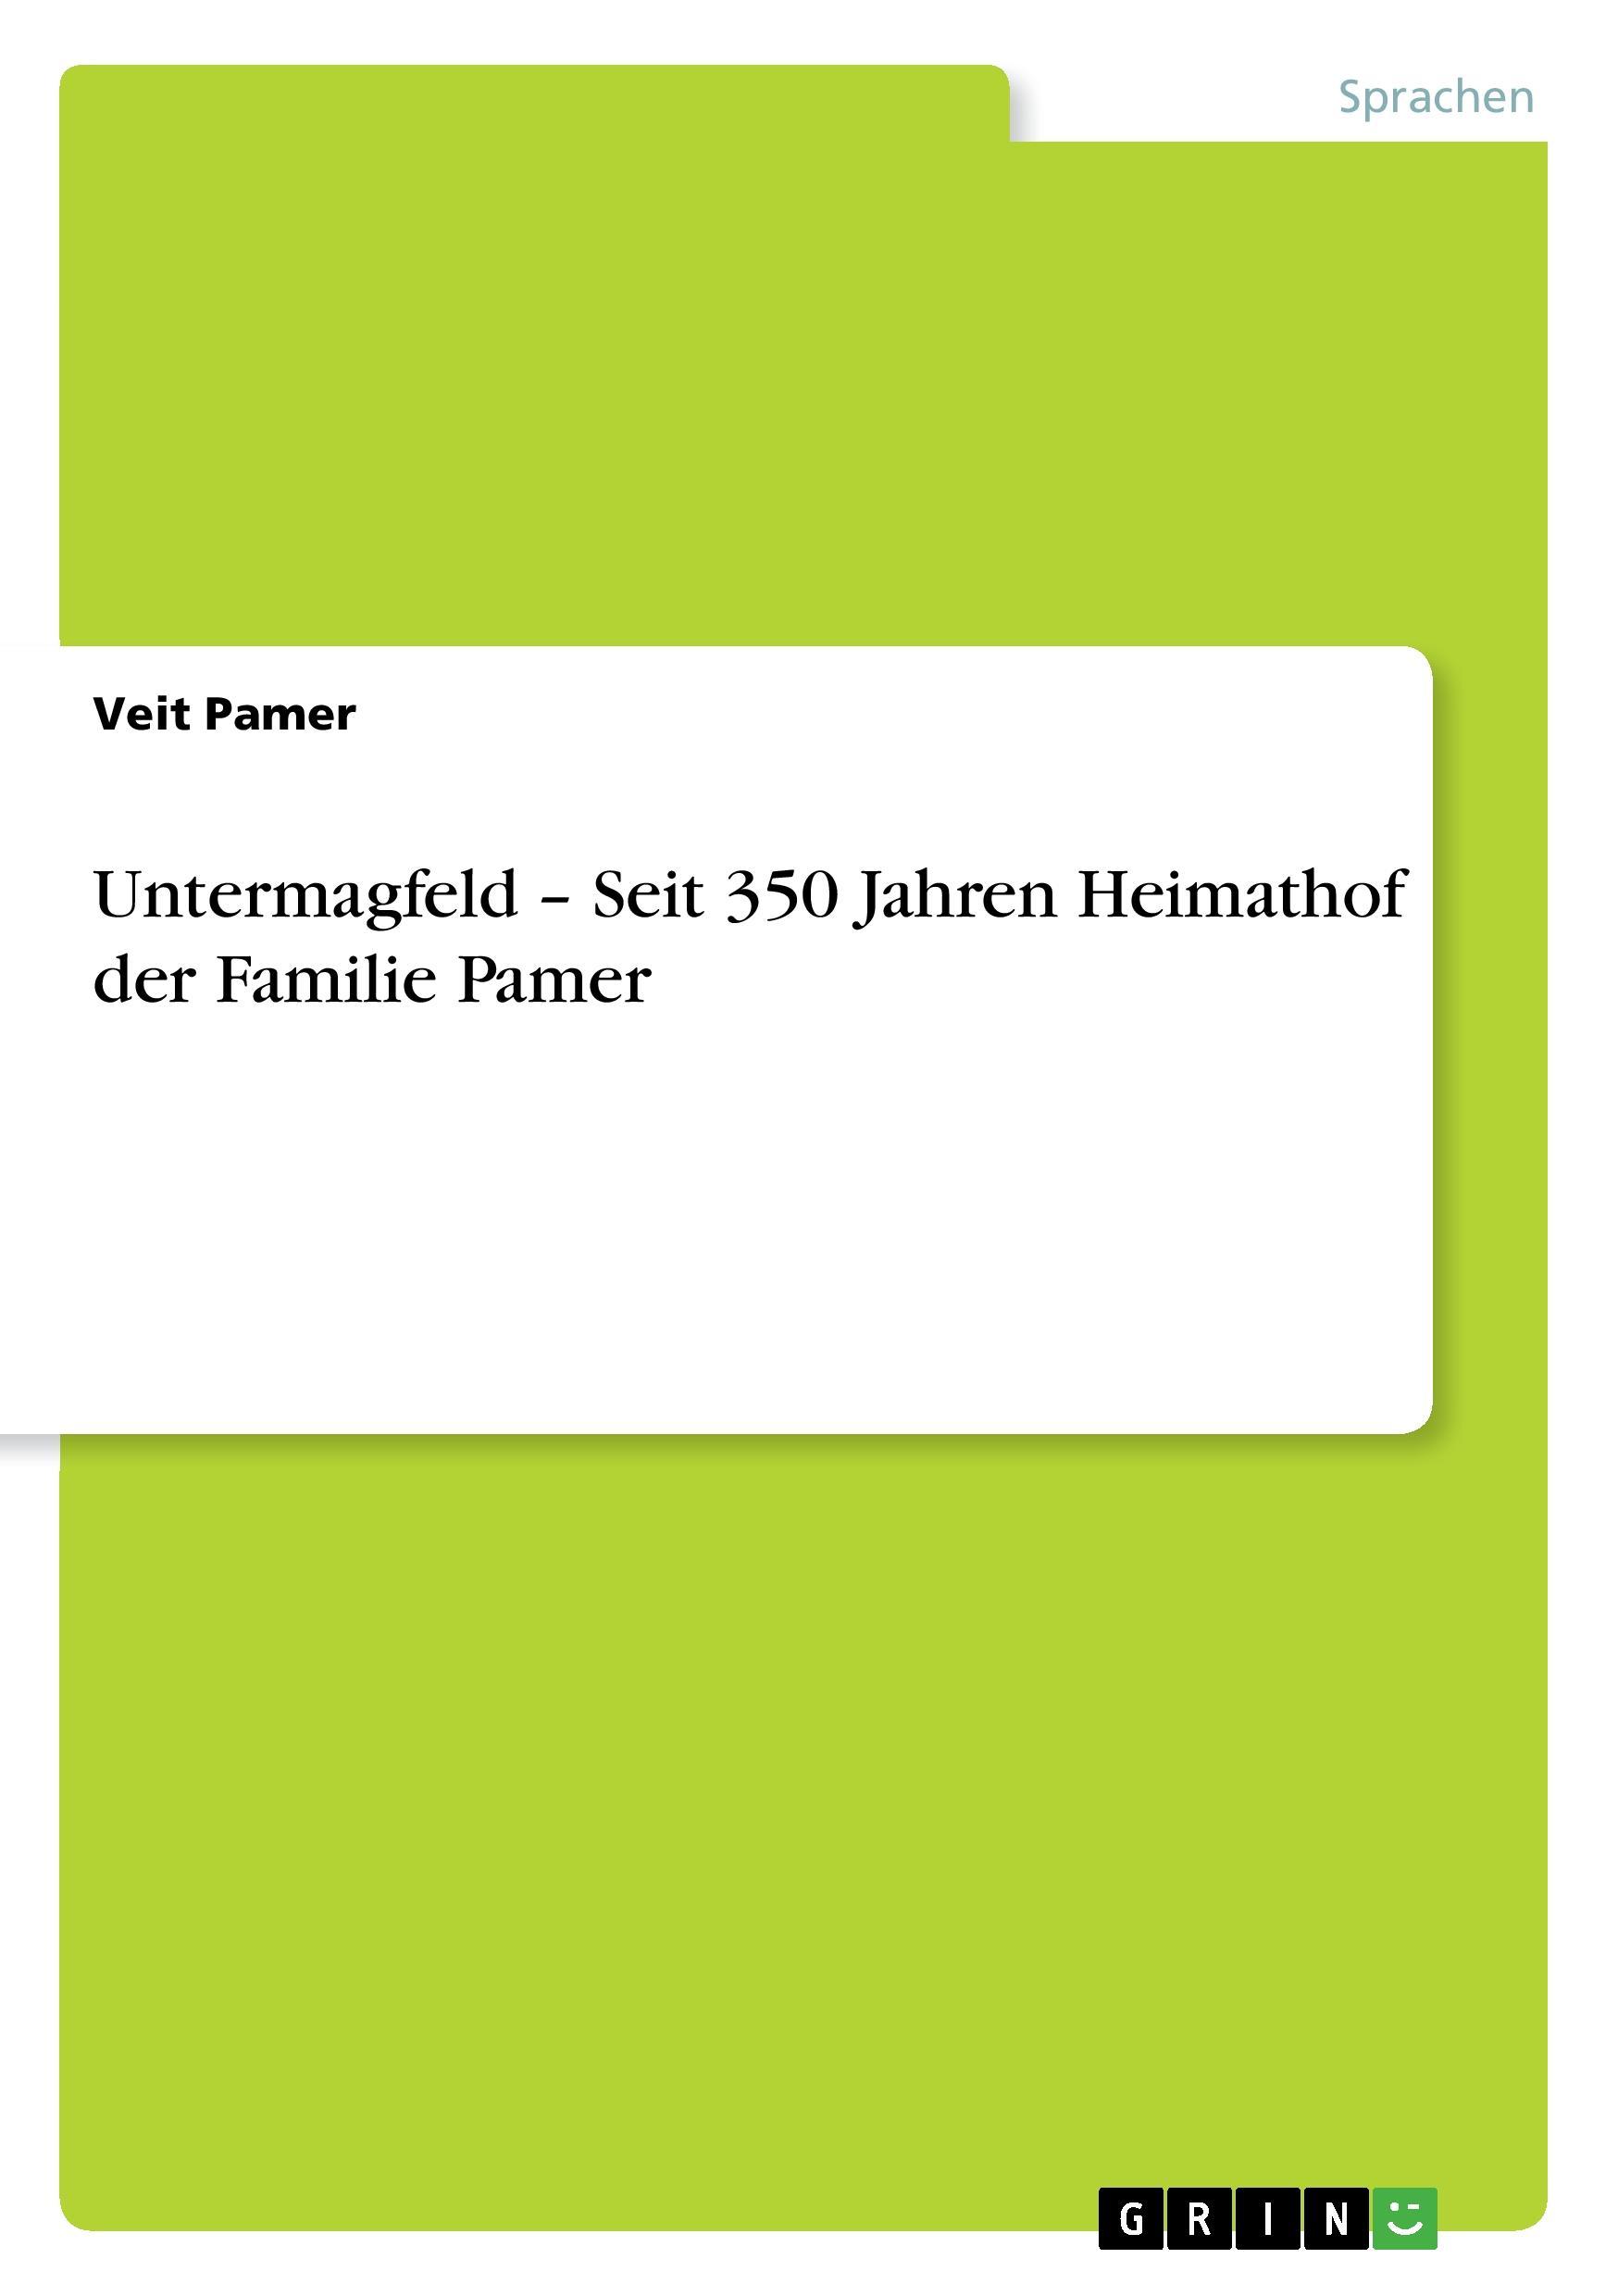 Untermagfeld - Seit 350 Jahren Heimathof der Familie Pamer - Pamer, Veit